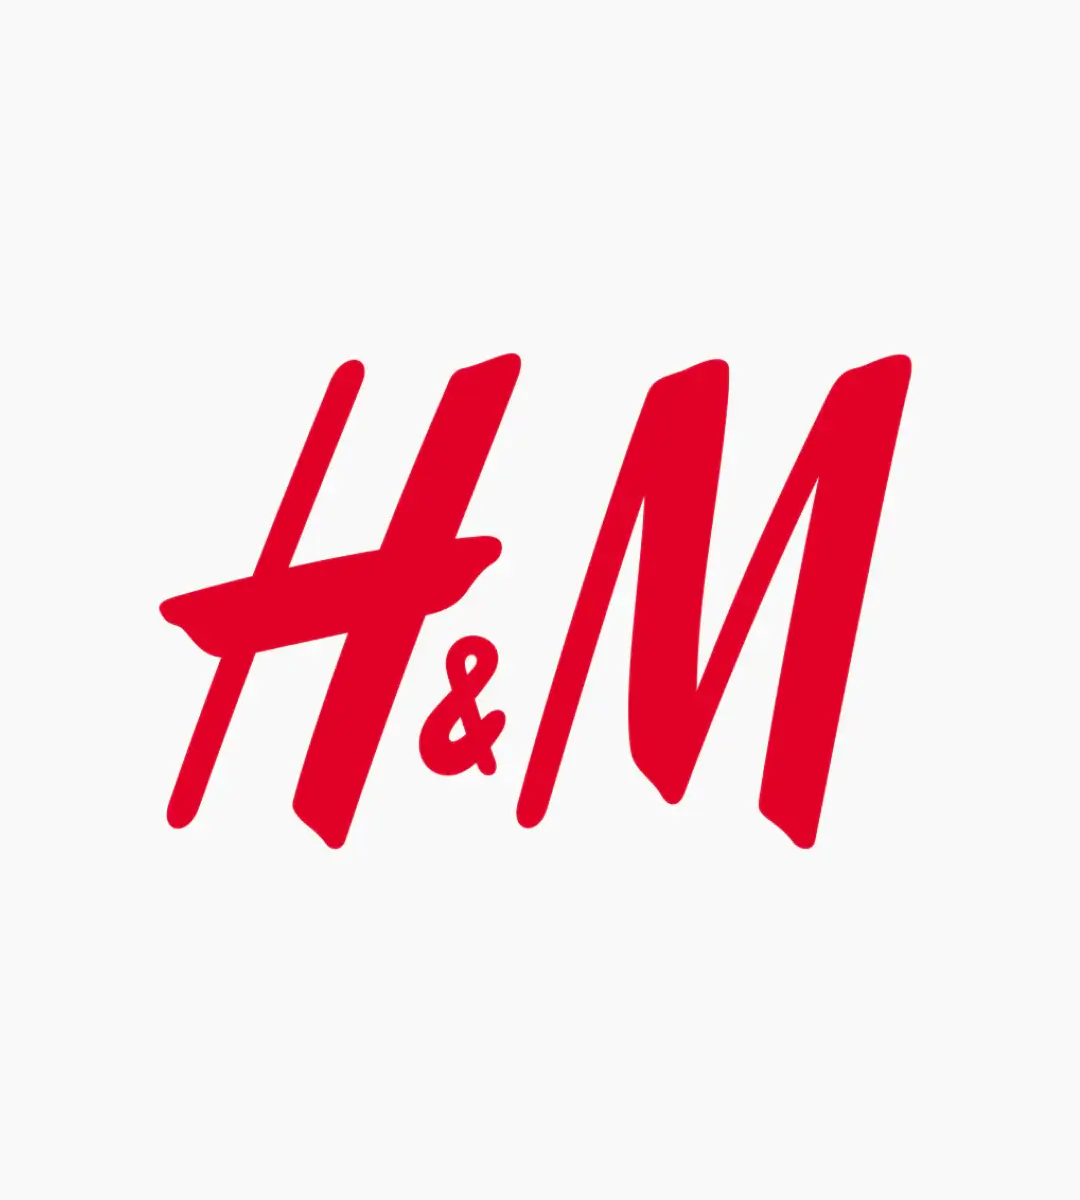 H&M dárkový poukaz